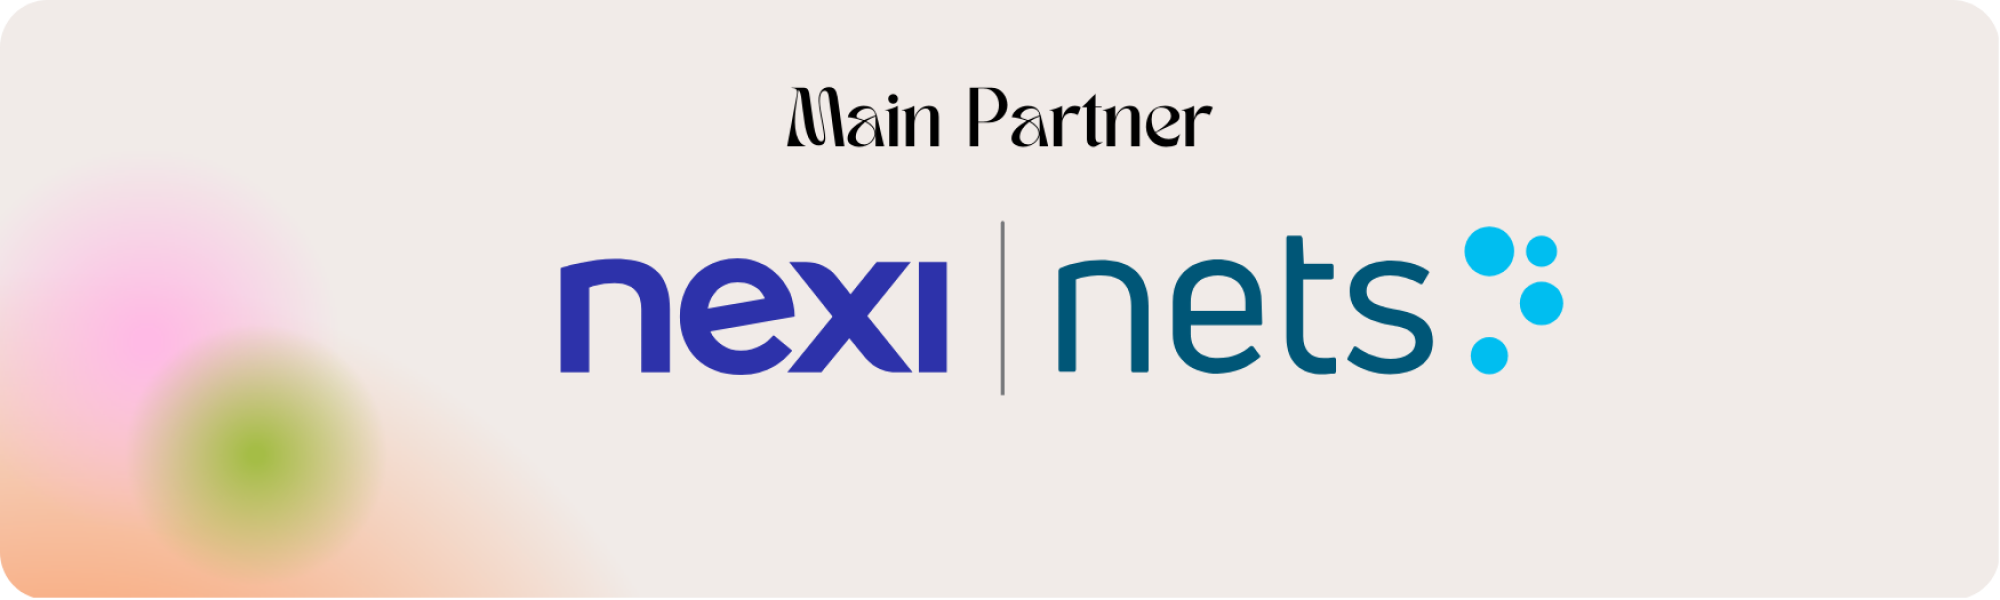 nexi-nets-main-partner